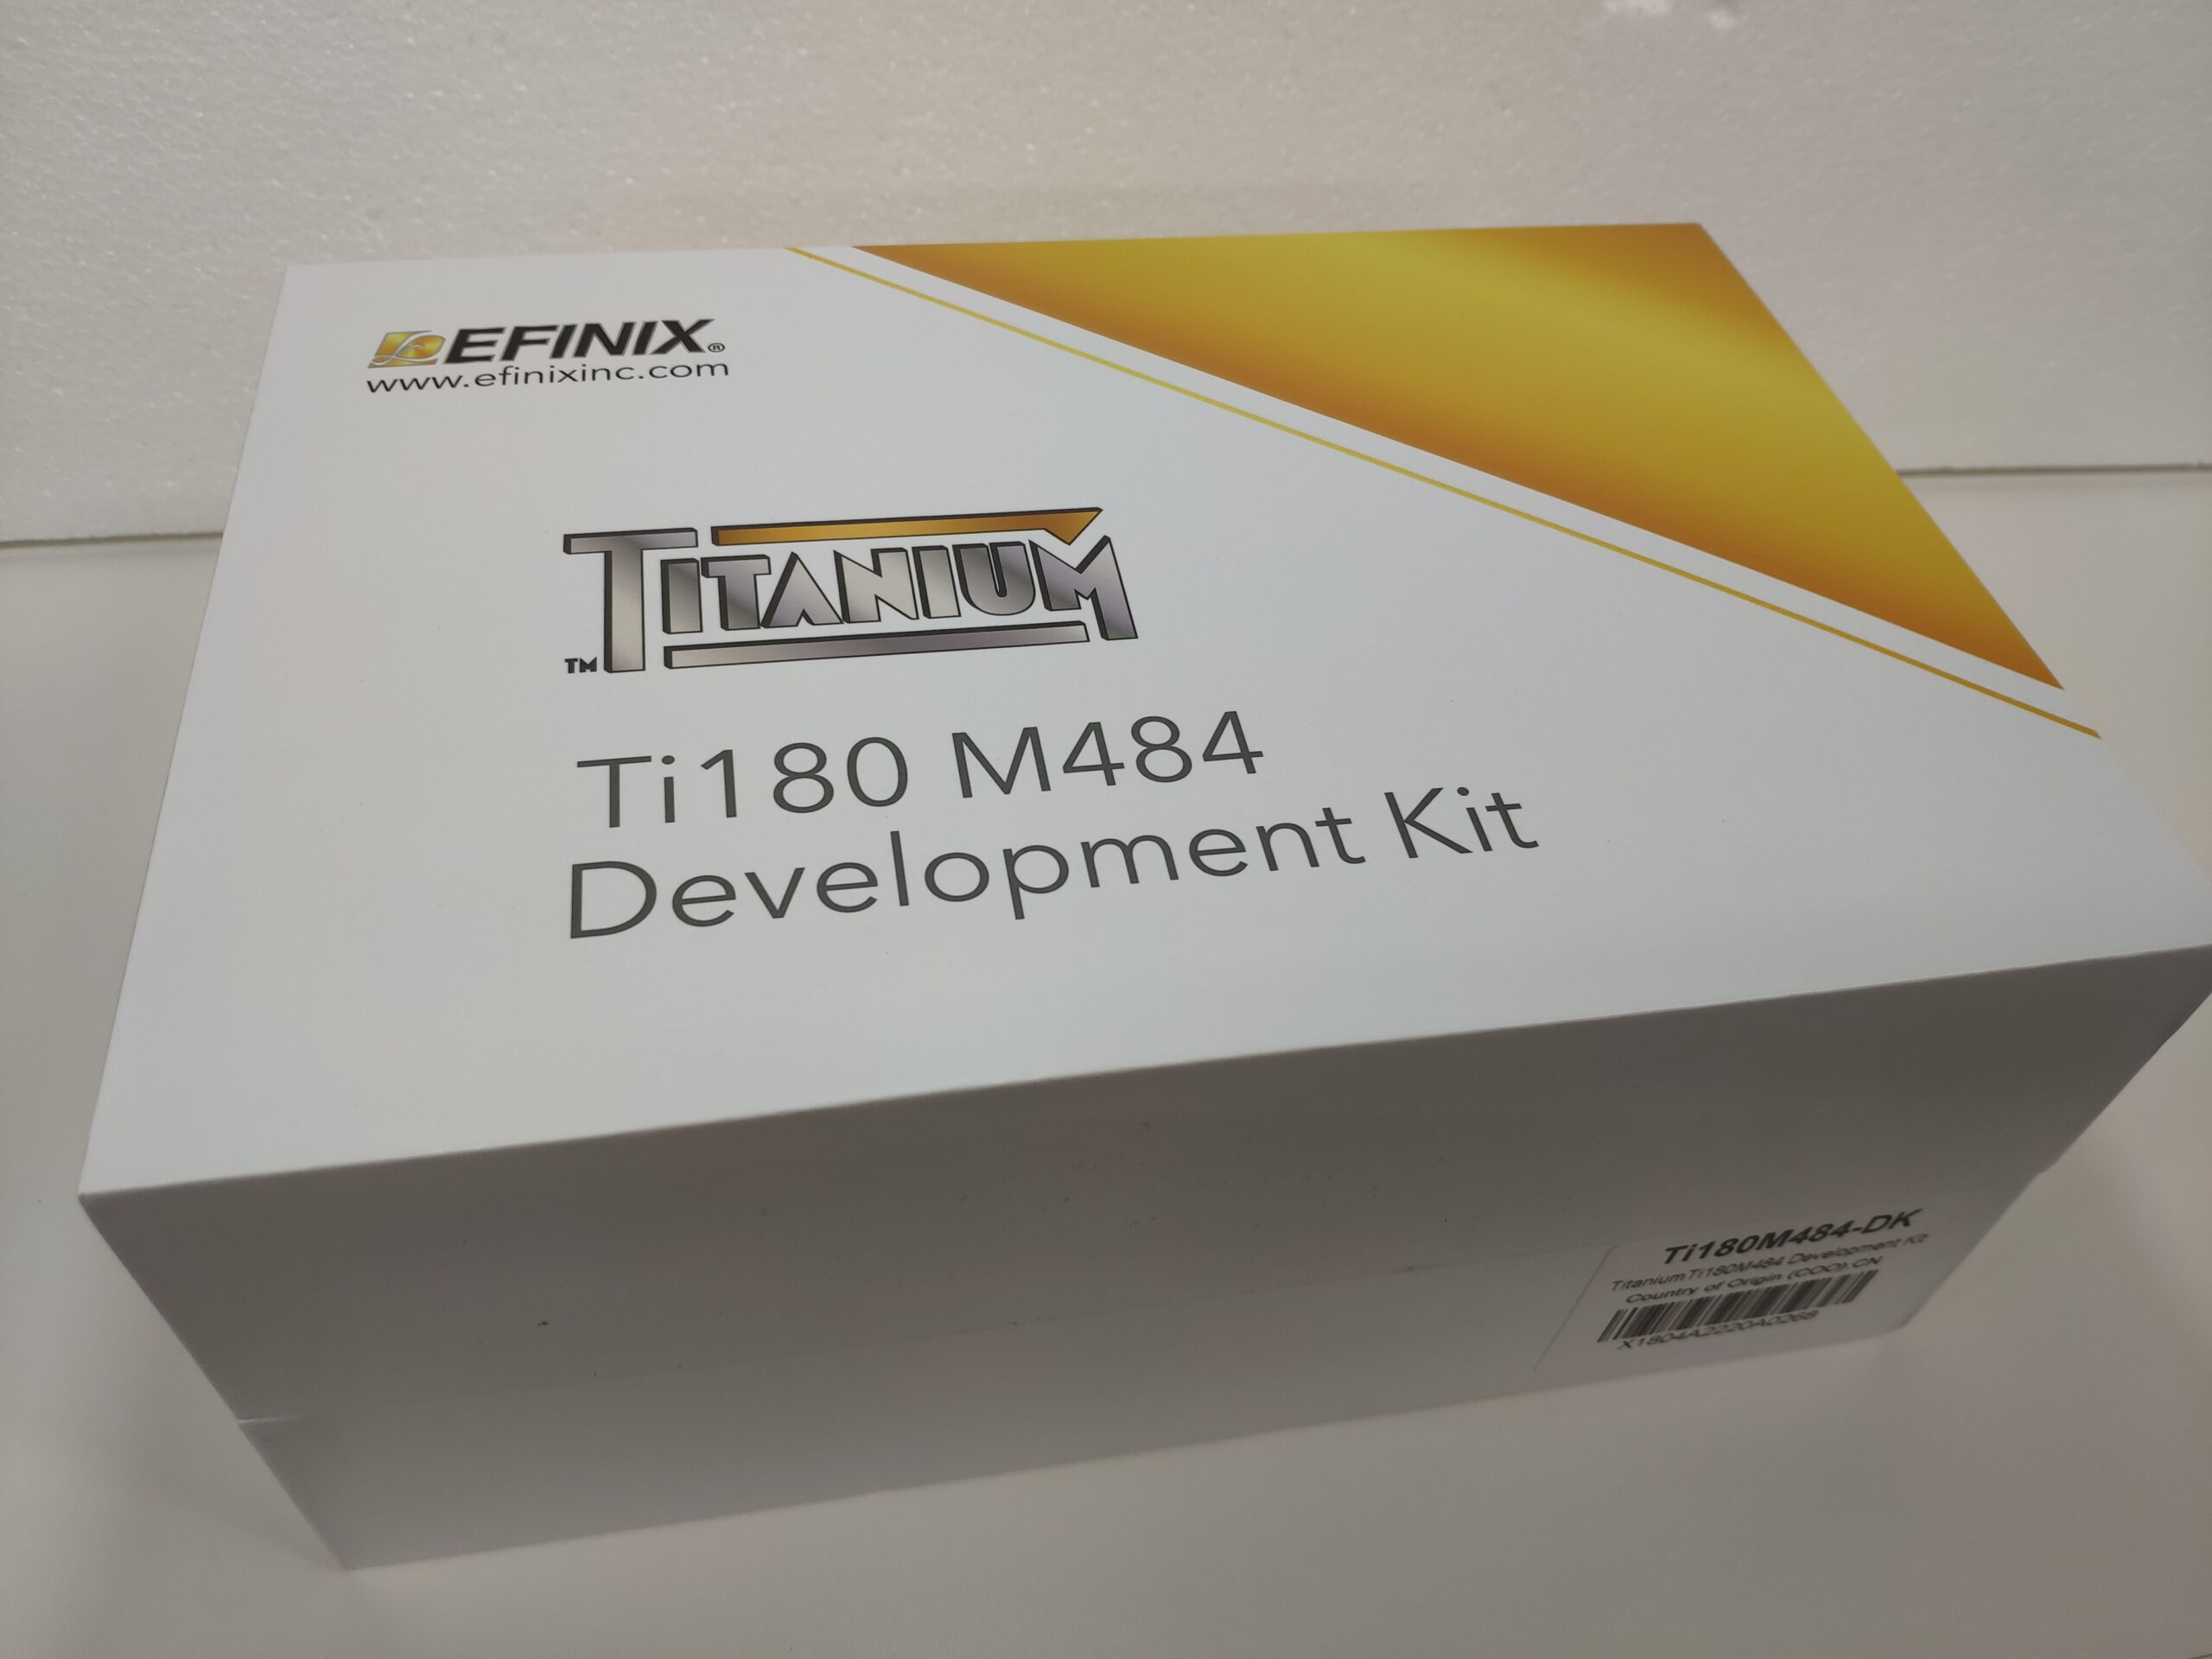 Read more about the article Efinix Titanium 180 M484 Development Kit